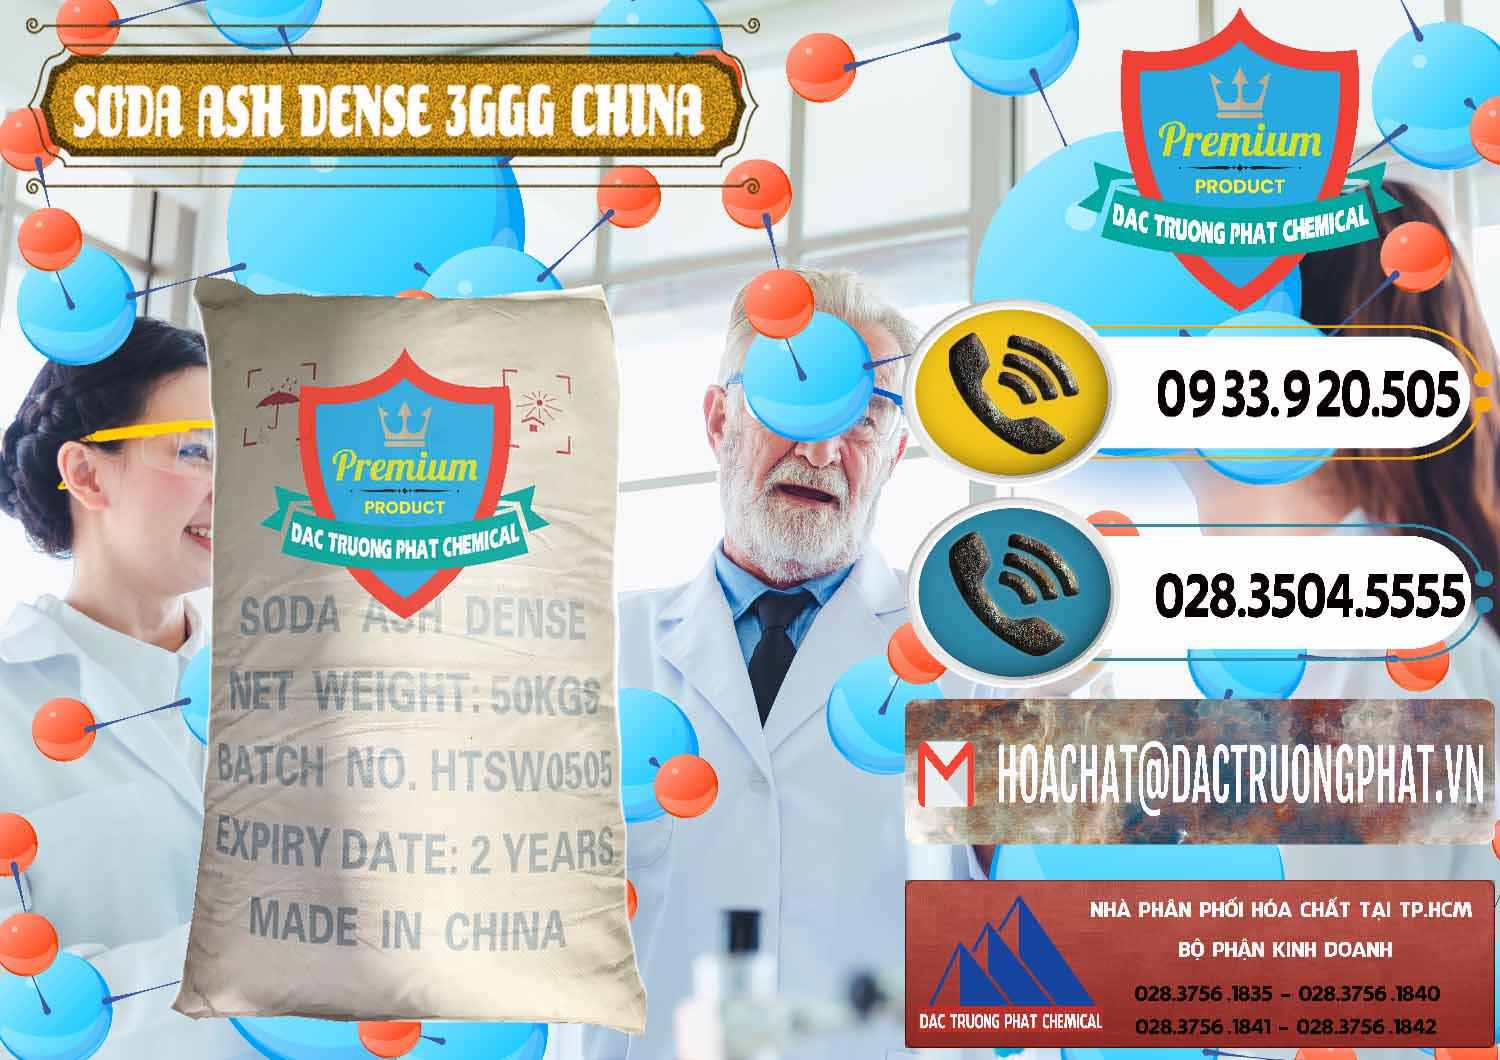 Nơi chuyên bán & cung cấp Soda Ash Dense - NA2CO3 3GGG Trung Quốc China - 0335 - Nhà cung cấp _ bán hóa chất tại TP.HCM - hoachatdetnhuom.vn